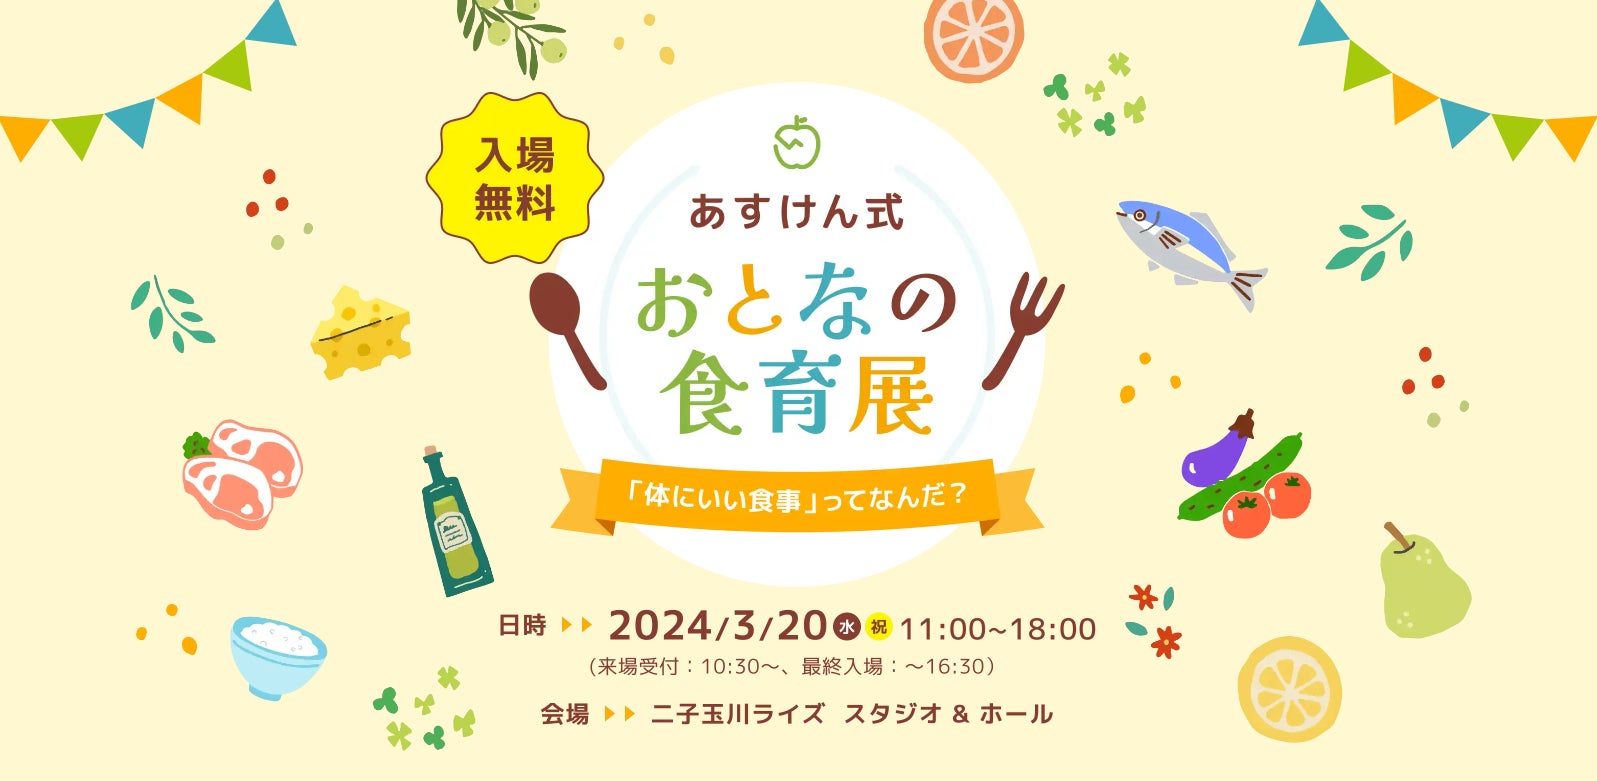 AI食事管理アプリ『あすけん』が初の食イベント 東京・世田谷区で開催